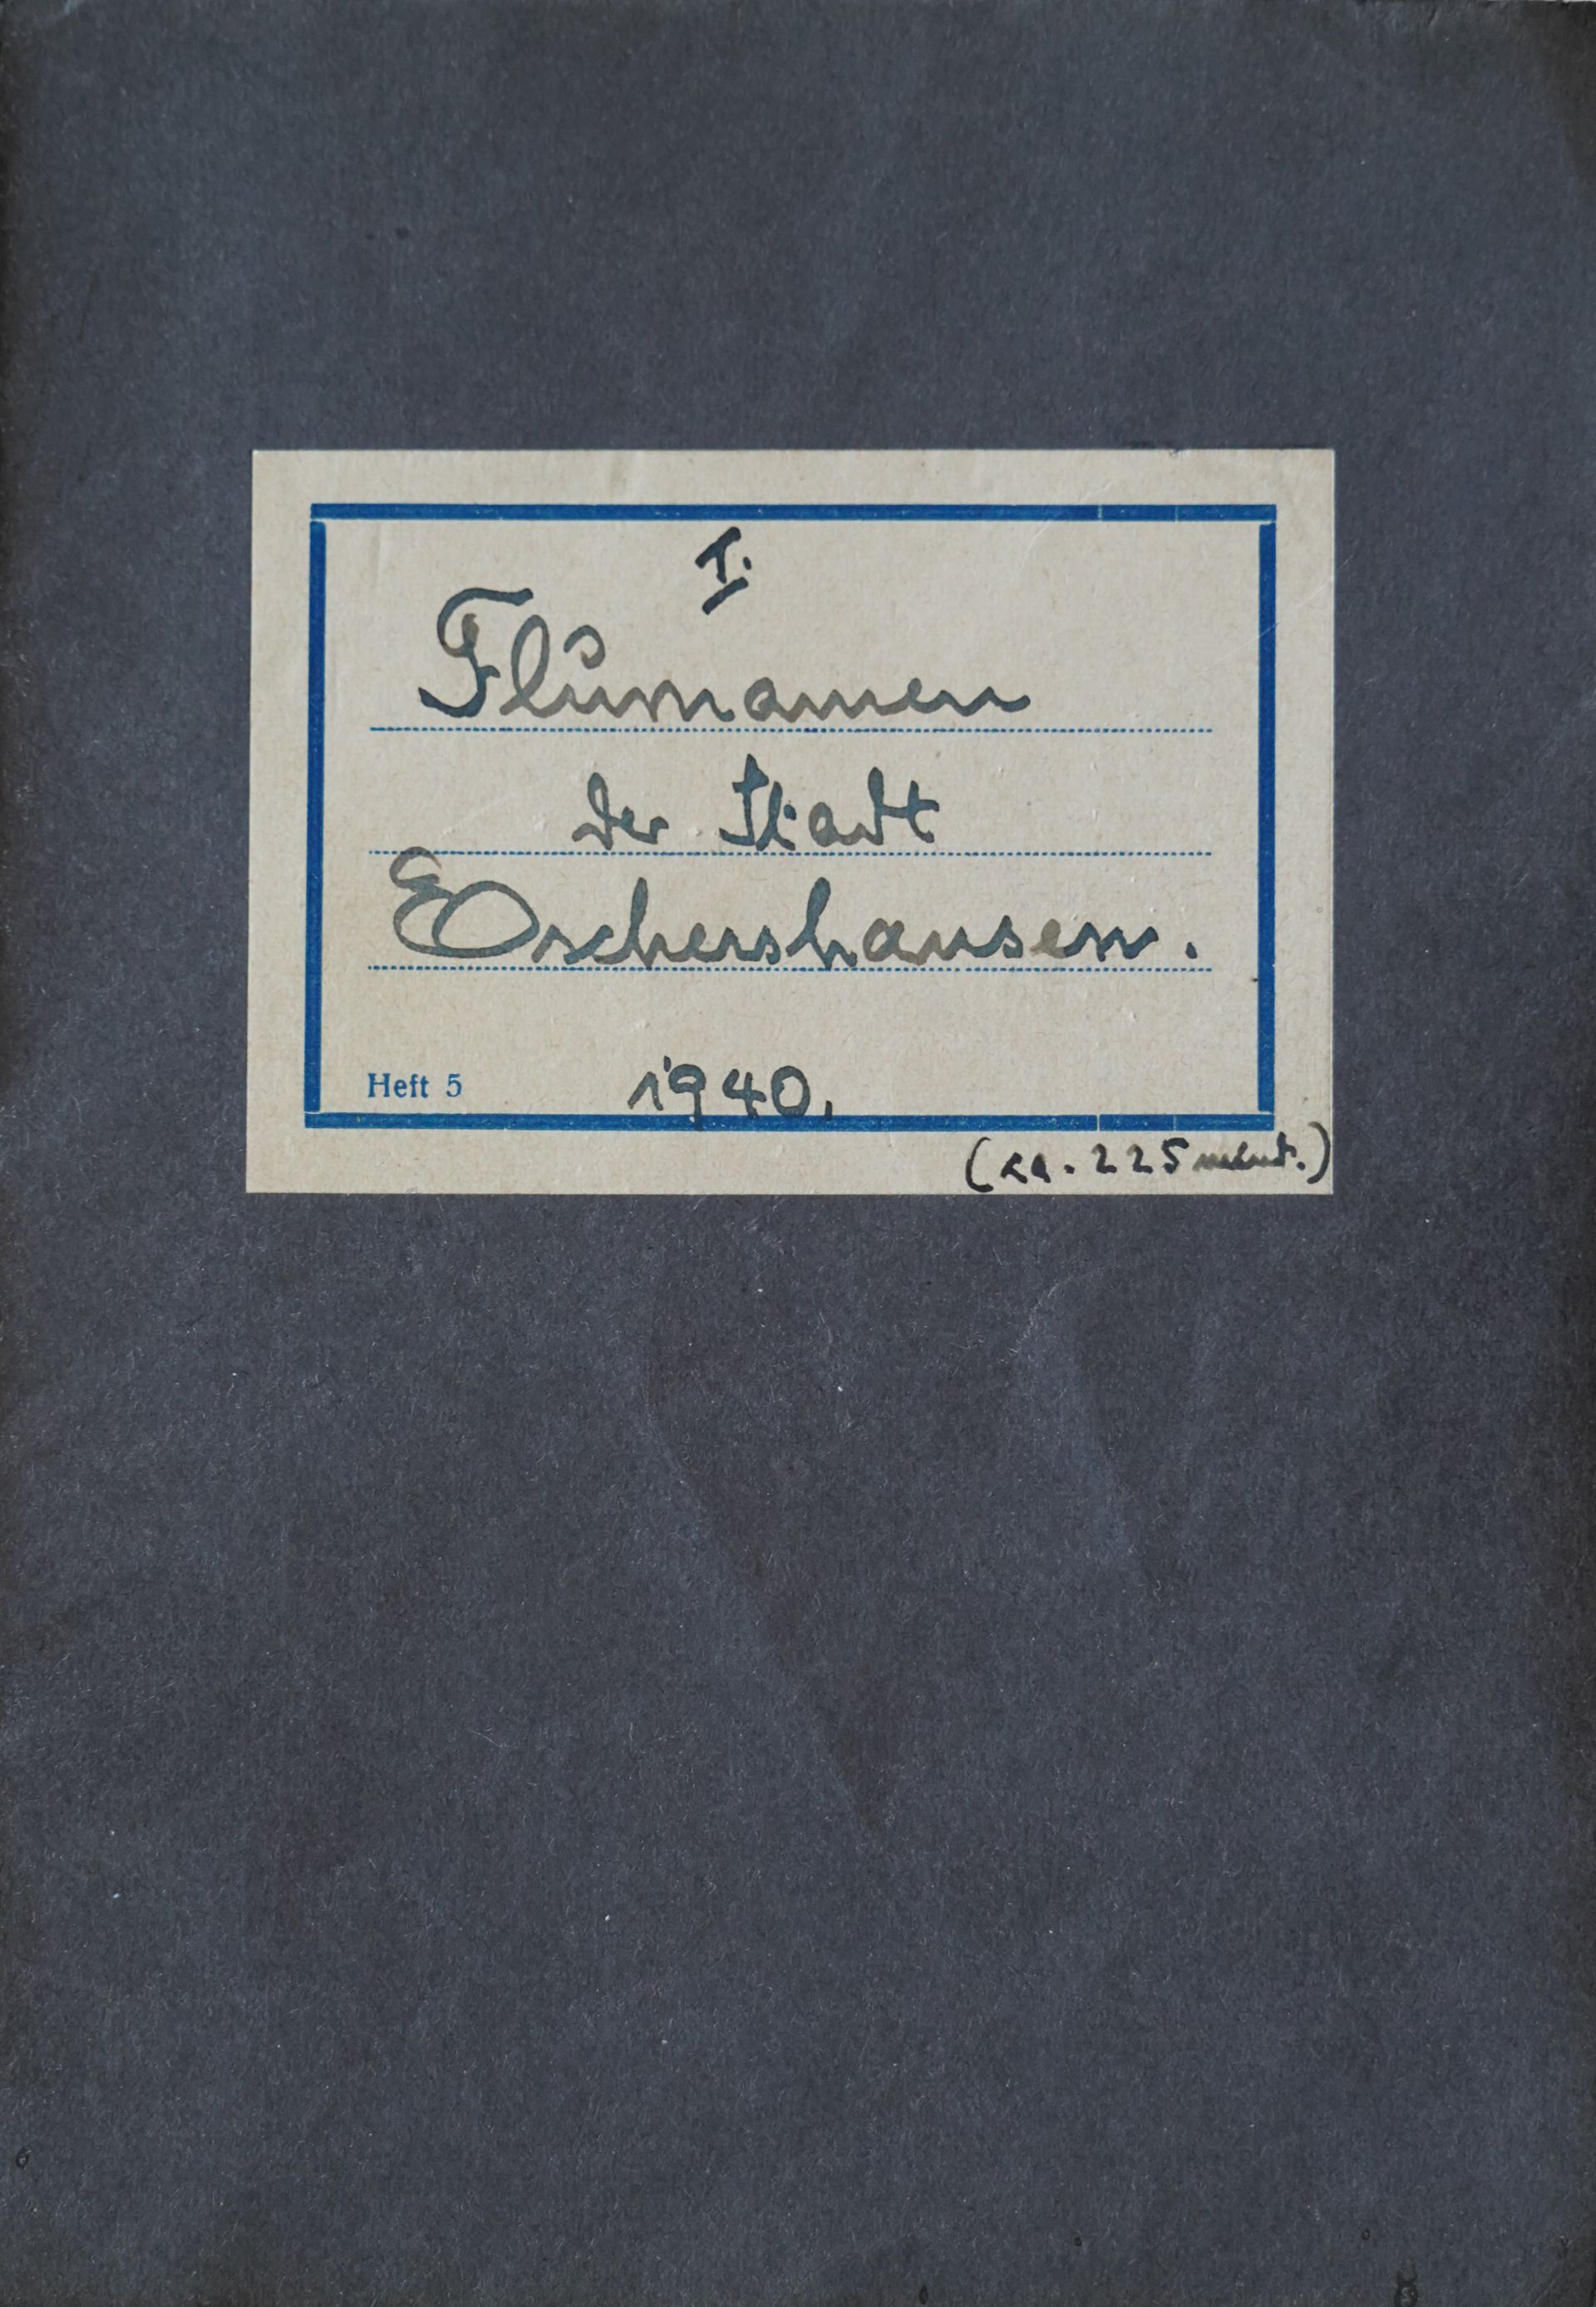 Titelseite des ersten Heftes über Eschershäuser Flurnamen von Carl Kaese 1940